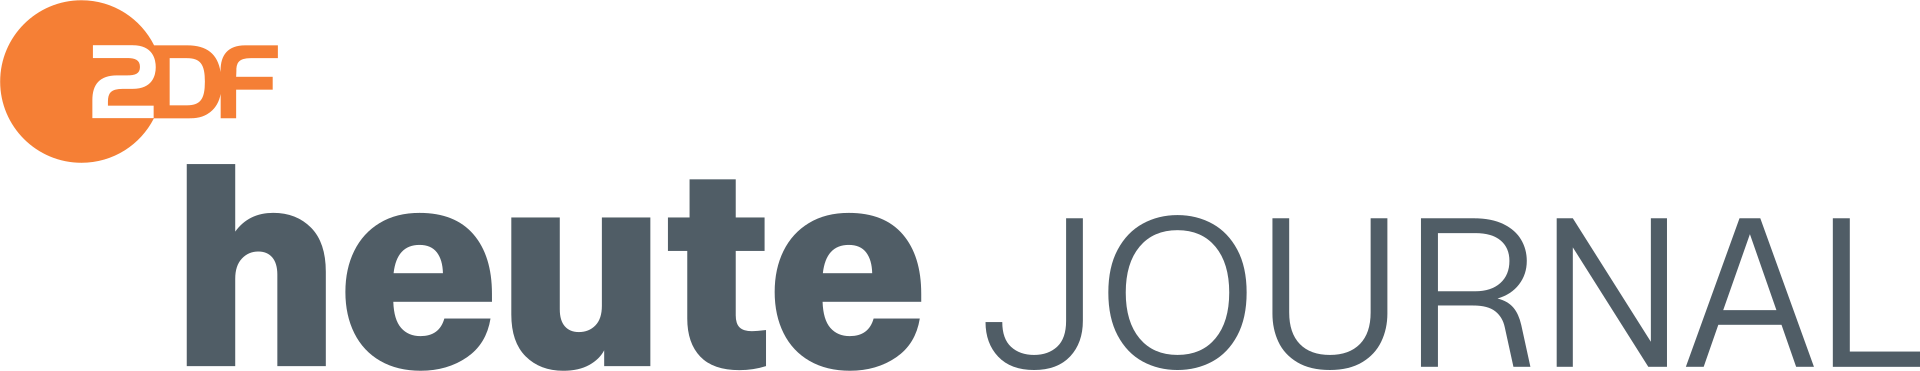 ZDF heute-journal Logo 2021.svg.png